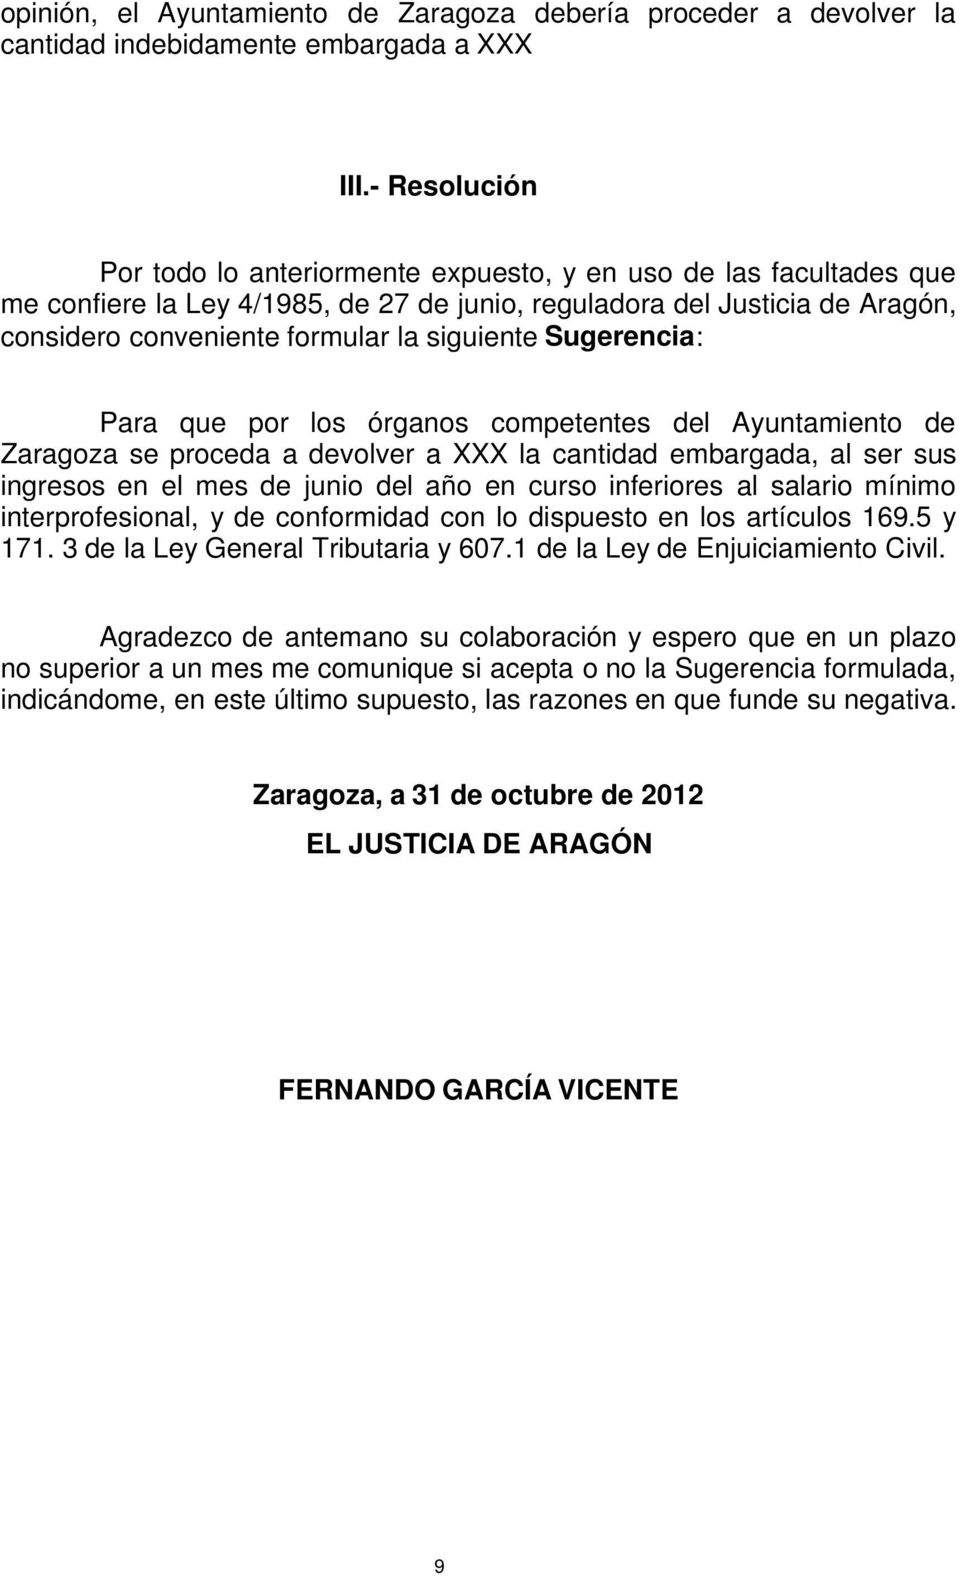 siguiente Sugerencia: Para que por los órganos competentes del Ayuntamiento de Zaragoza se proceda a devolver a XXX la cantidad embargada, al ser sus ingresos en el mes de junio del año en curso